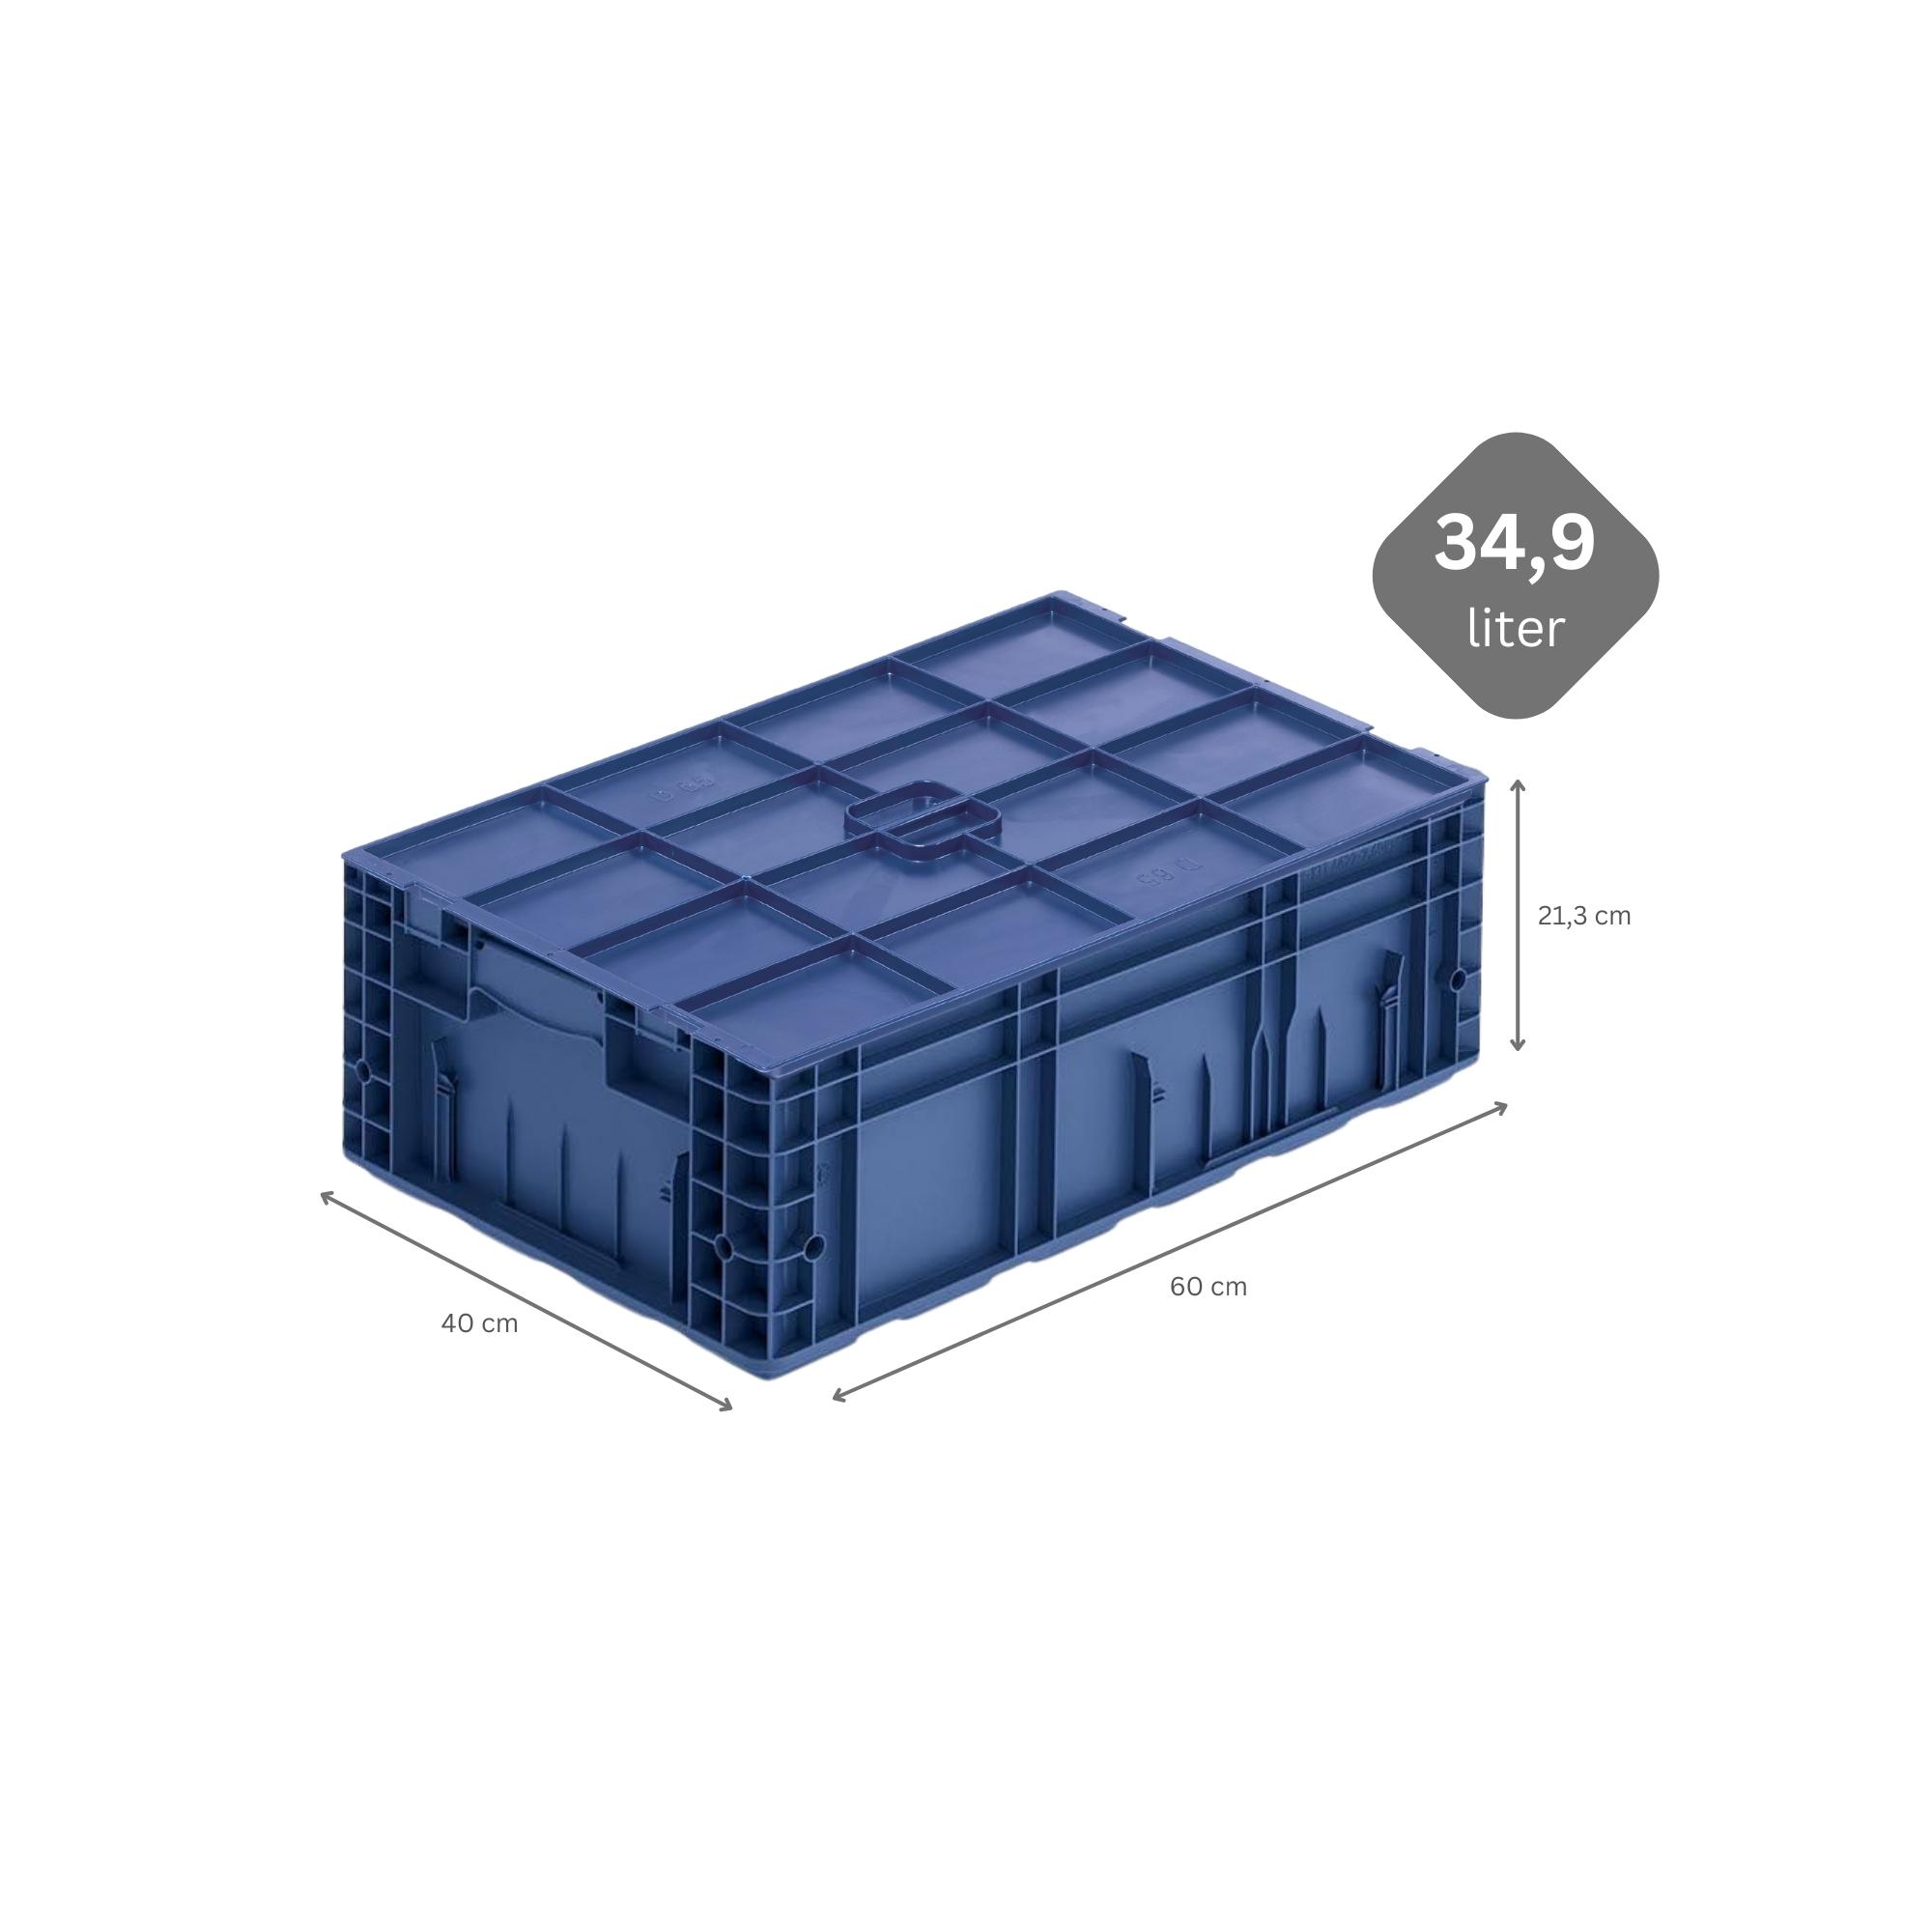 VDA KLT Kleinladungsträger mit Verbundboden & Auflagedeckel | HxBxT 21,3x40x60cm | 34,9 Liter | KLT, Transportbox, Transportbehälter, Stapelbehälter